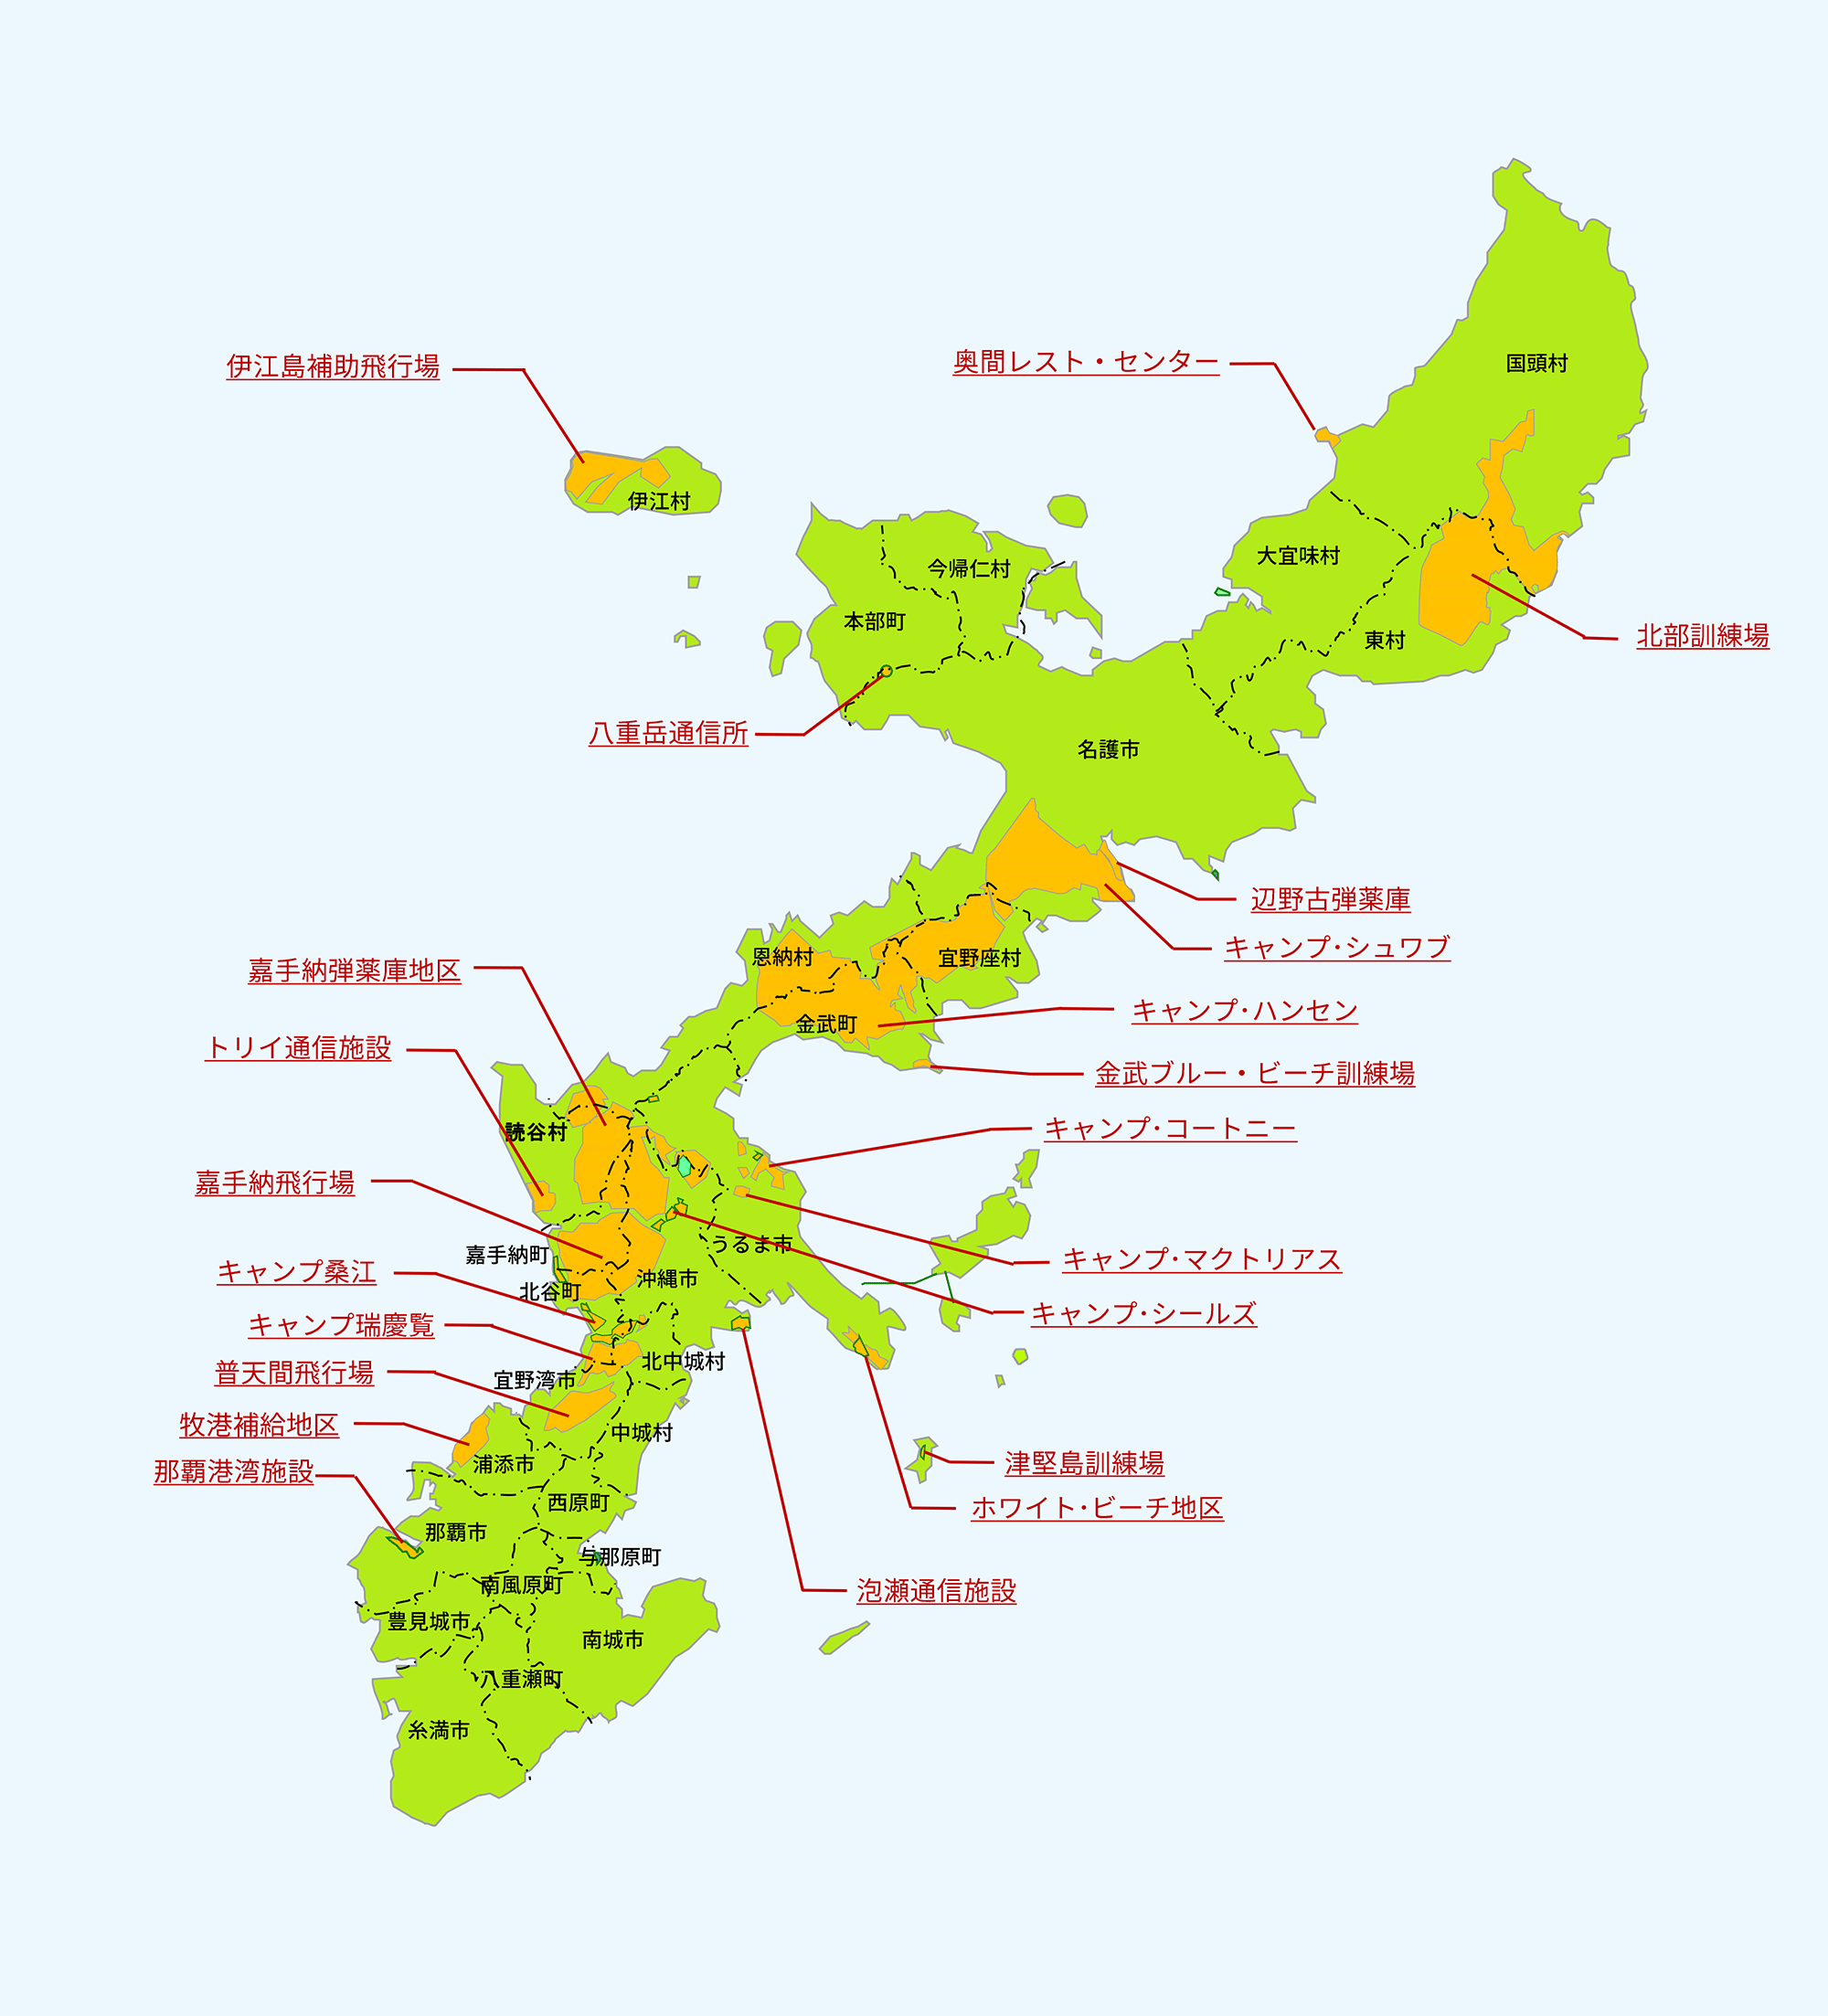 沖縄防衛局管内における在日米軍施設・区域（専用施設）を表した図